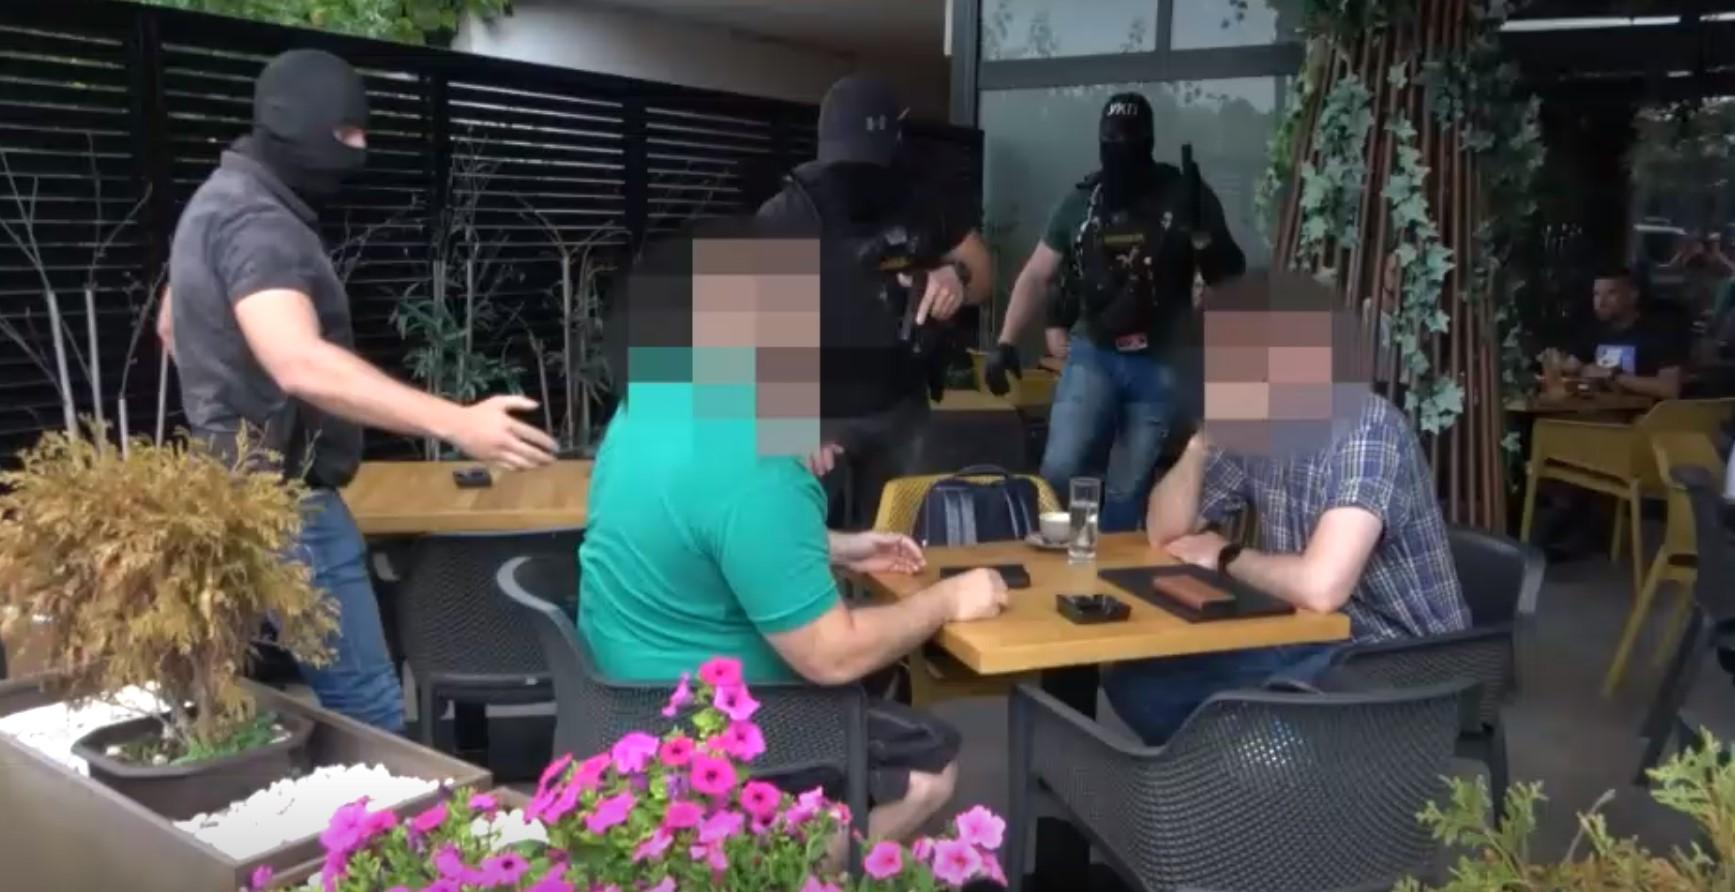 Pogledajte video: Mirno pio kafu u kafiću, a onda ga je policija uhapsila